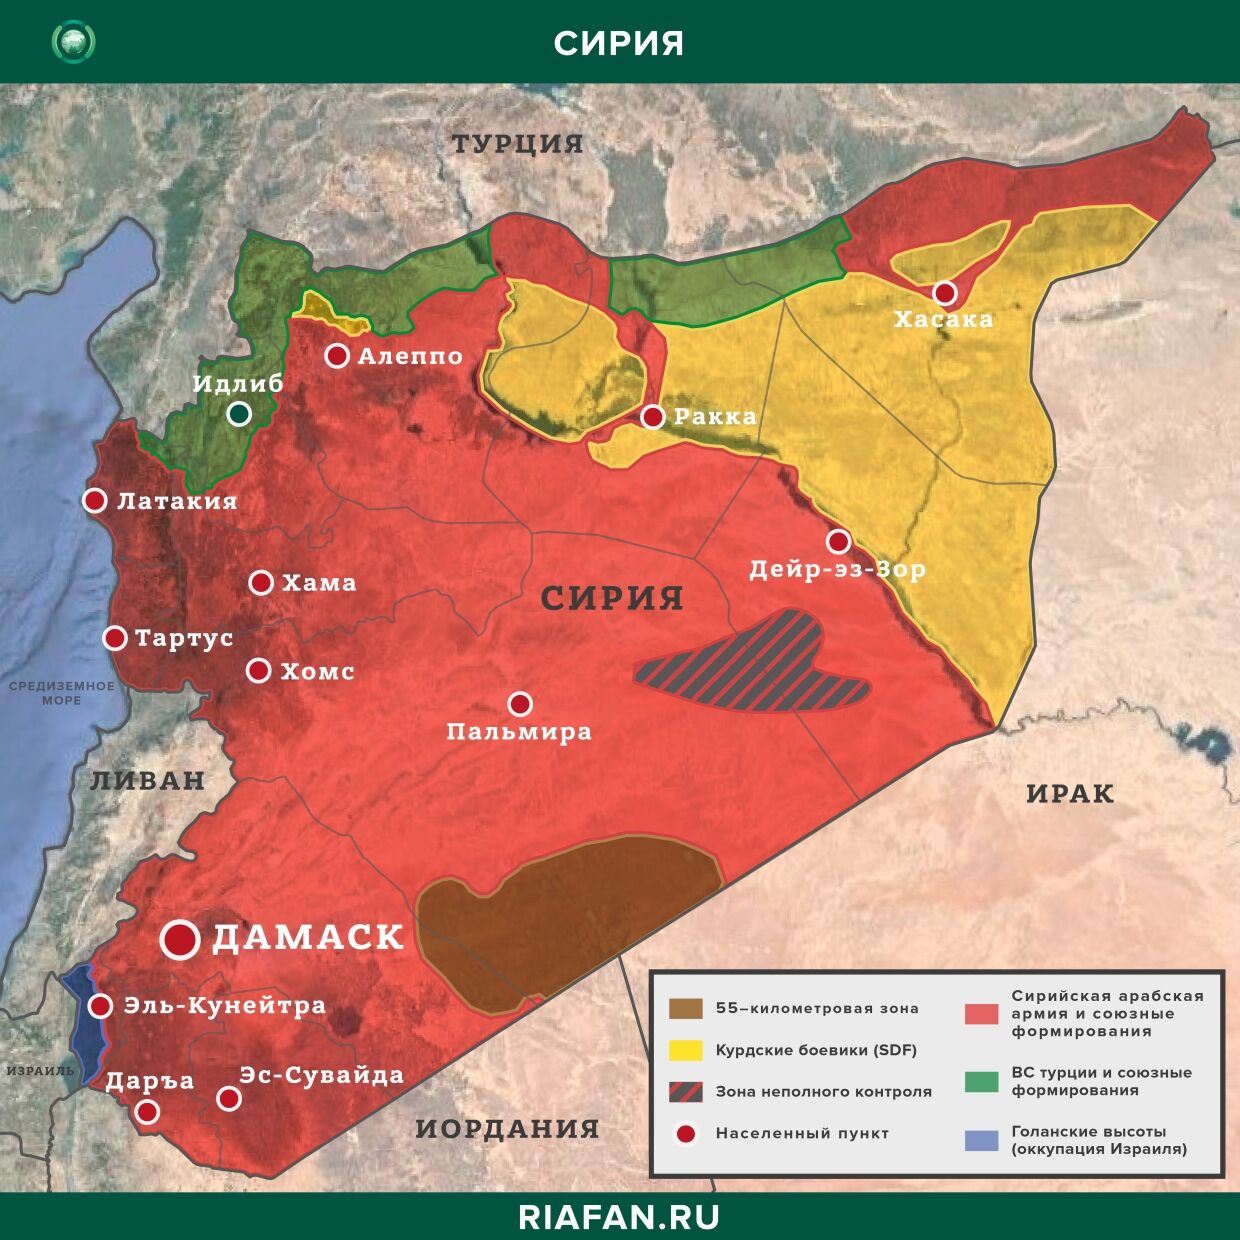 Nouvelles de Syrie 7 Avril 12.30: в Дейр-эз-Зоре погиб американский военнослужащий, в Алеппо ликвидированы 9 боевиков YPG